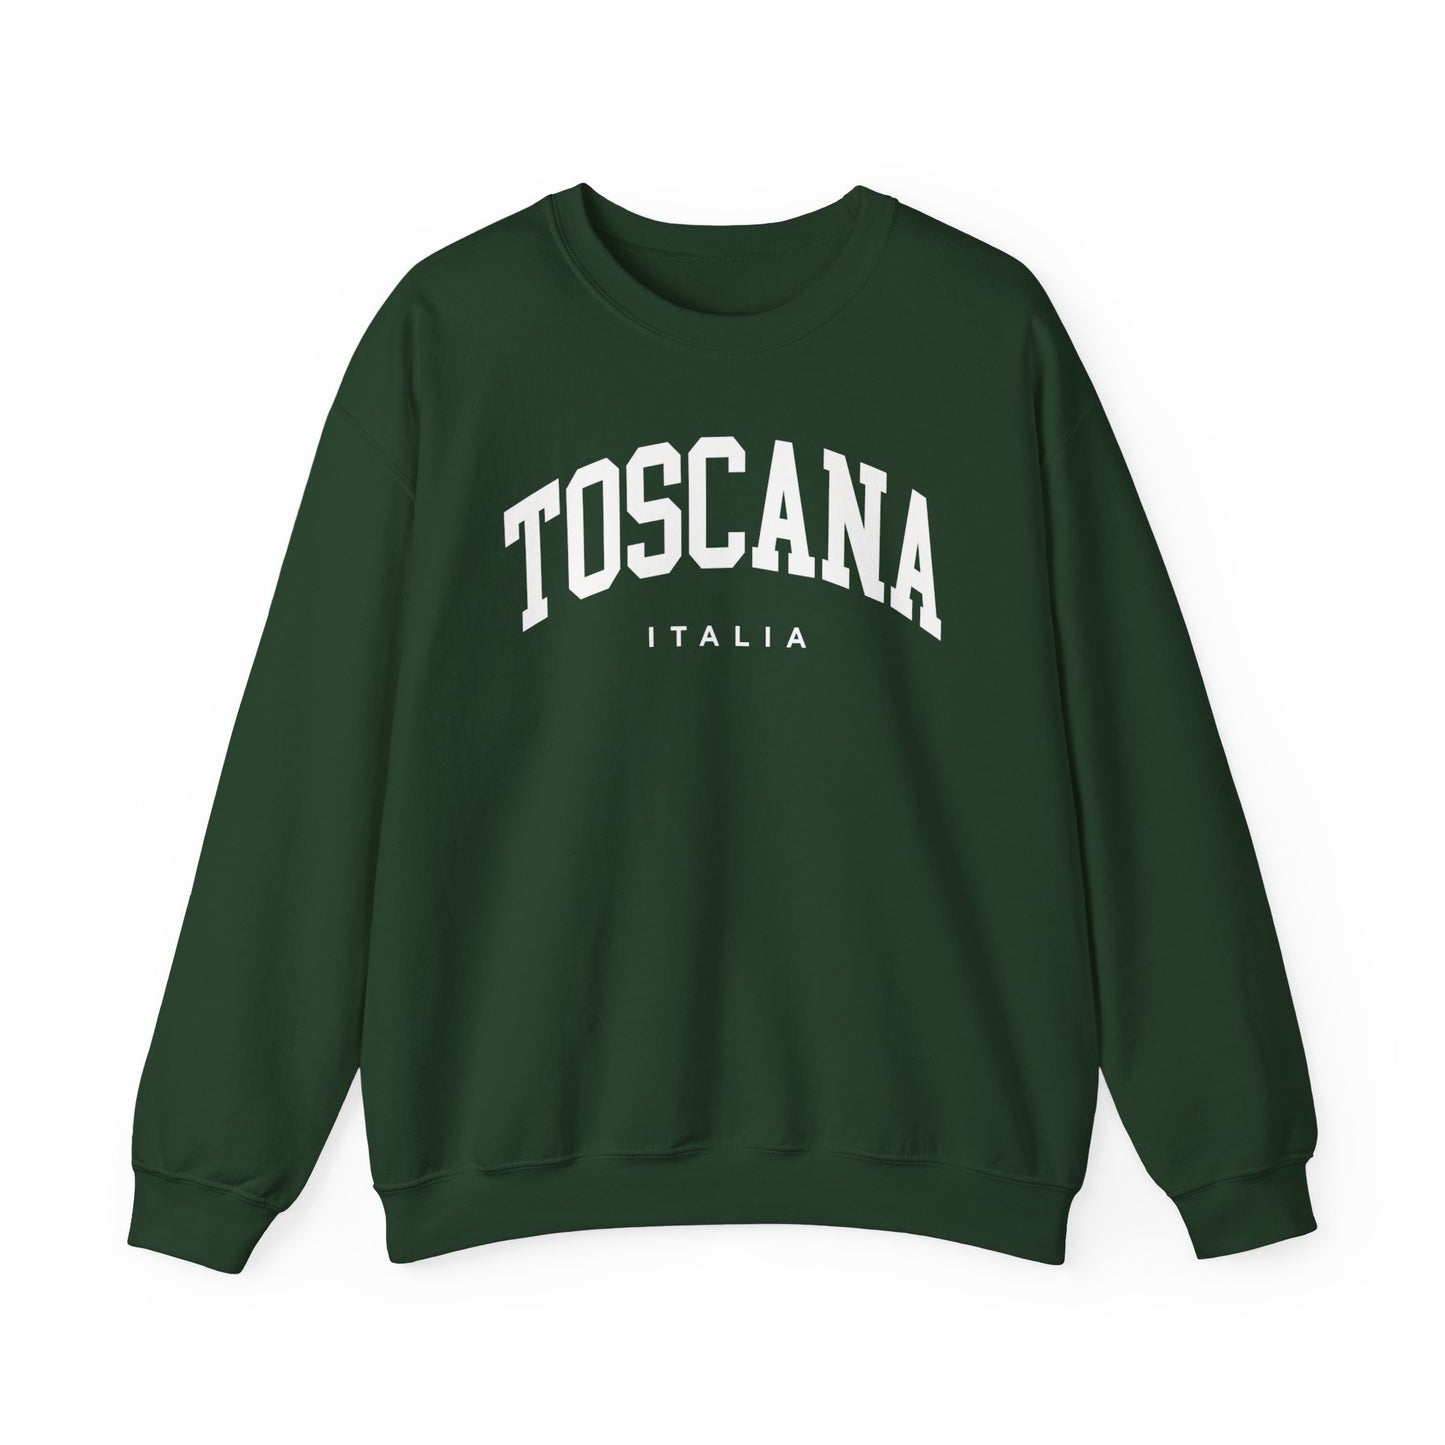 Tuscany Italy Sweatshirt